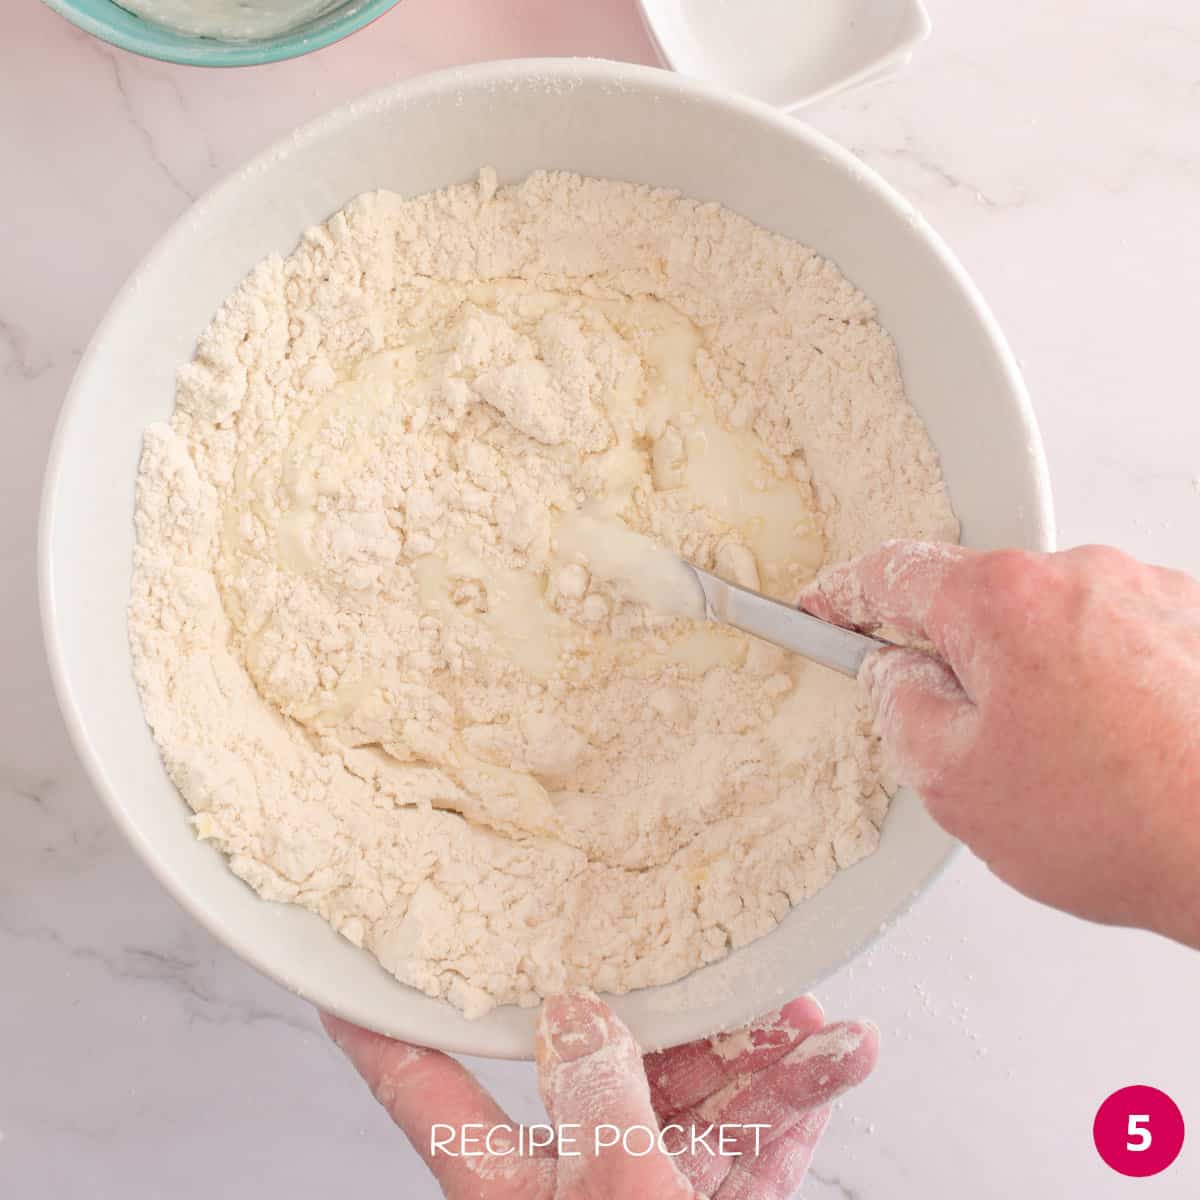 Mixing scone dough.